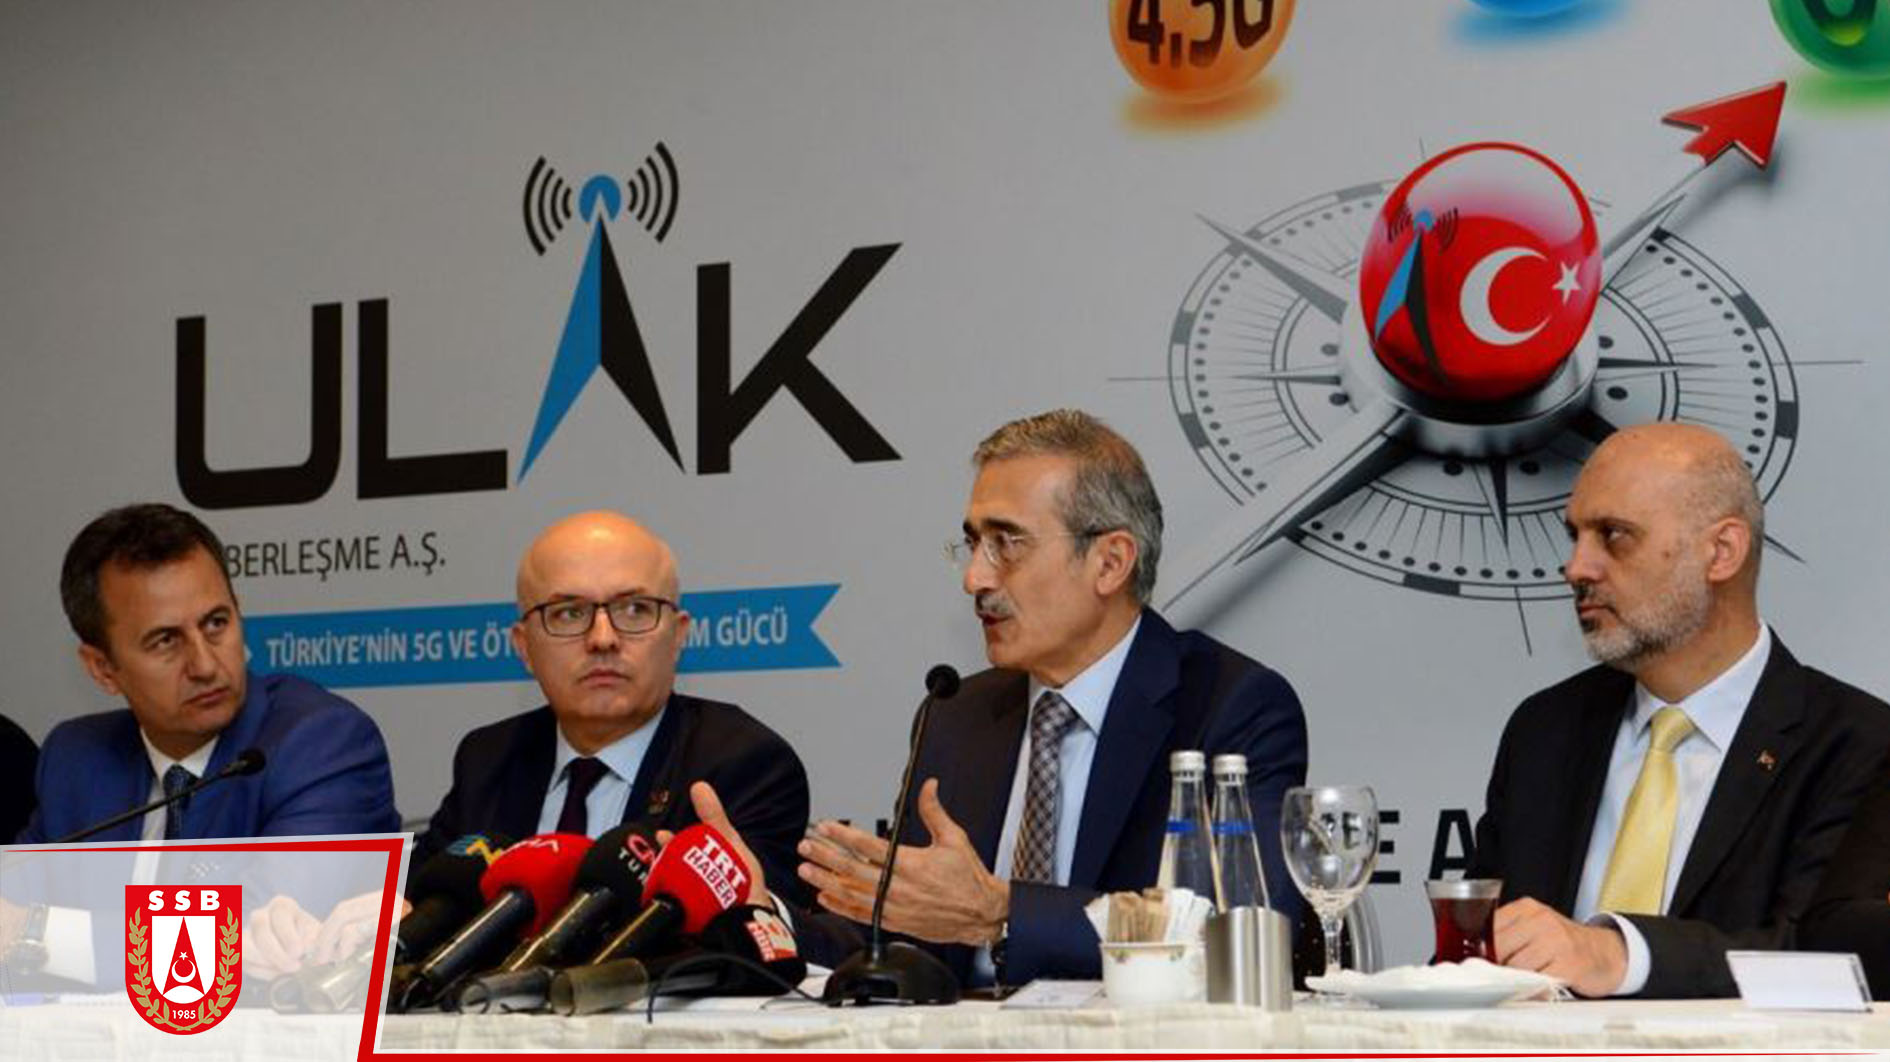 SSB Başkanı İsmail Demir: "Yerli ve milli ürünleri teşvik etmeyi sürdüreceğiz"